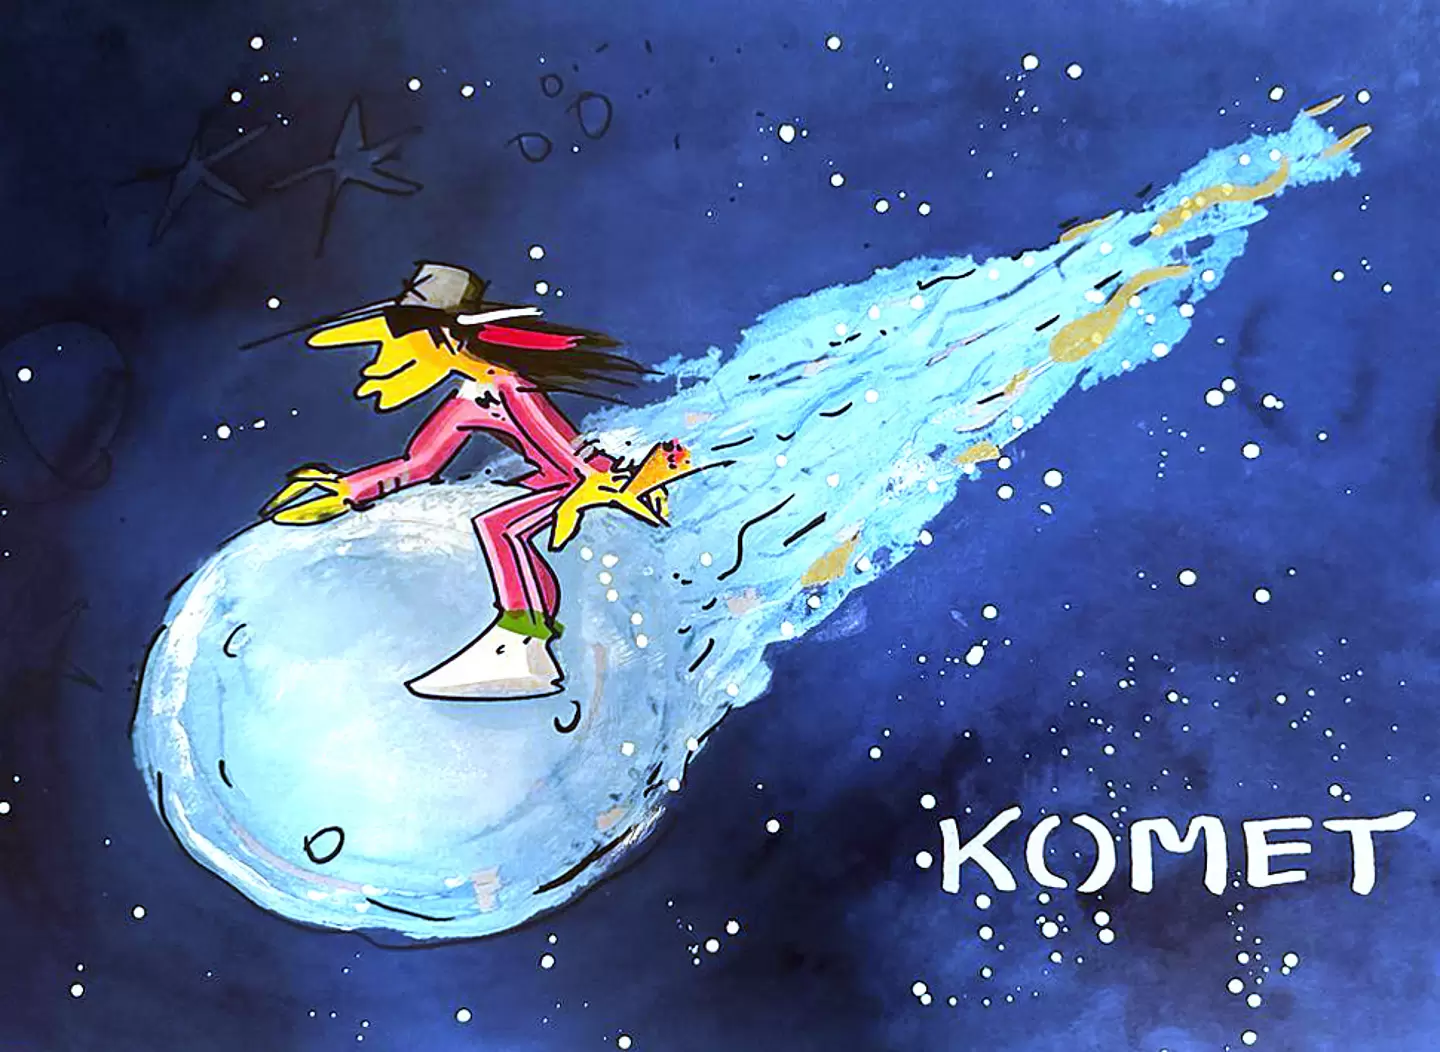 Udo Lindenberg - KOMET - Midnight Edition - original Siebdruck, handsigniert